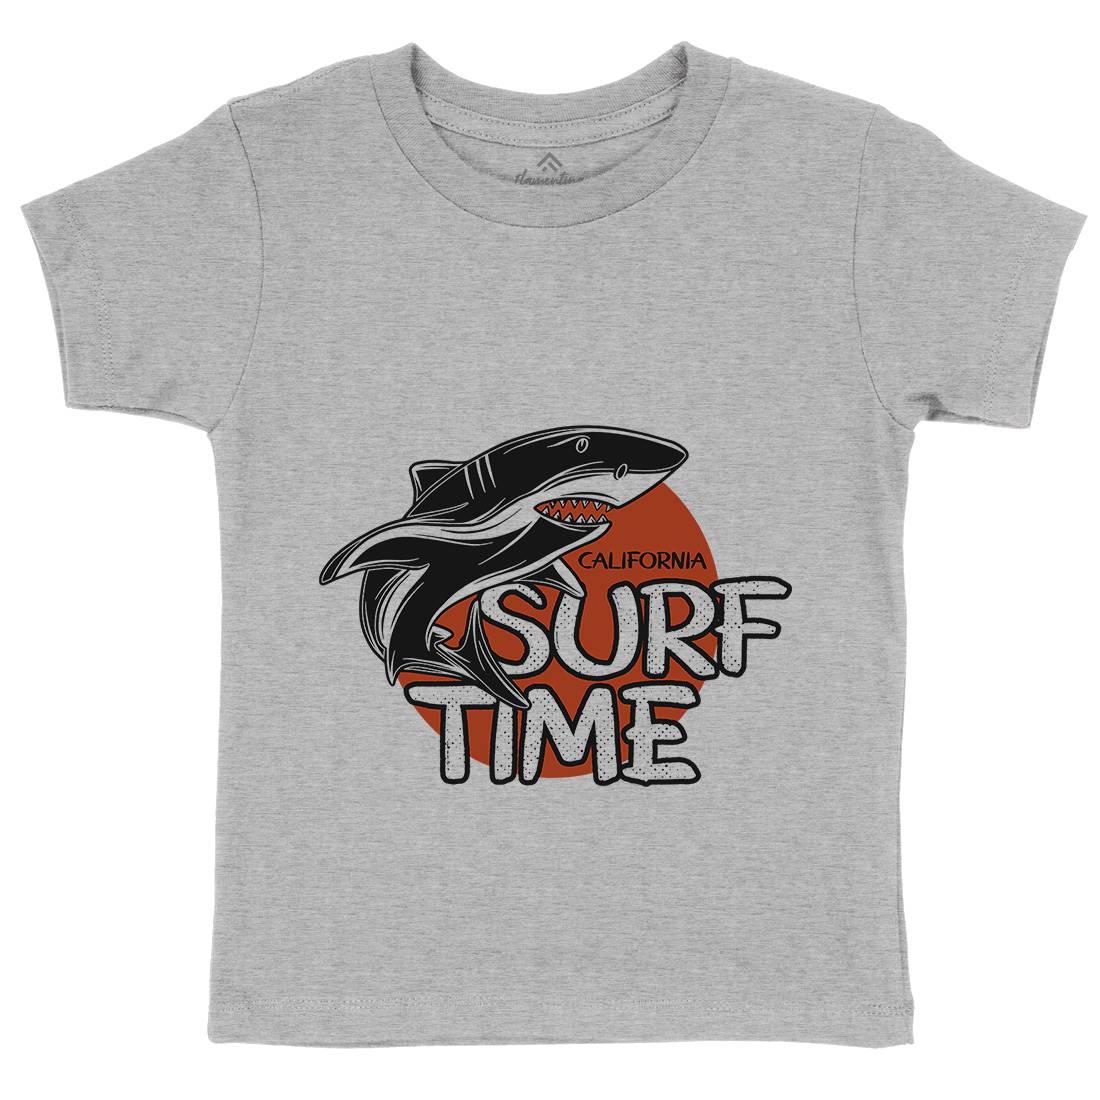 Shark Time Kids Organic Crew Neck T-Shirt Navy D969